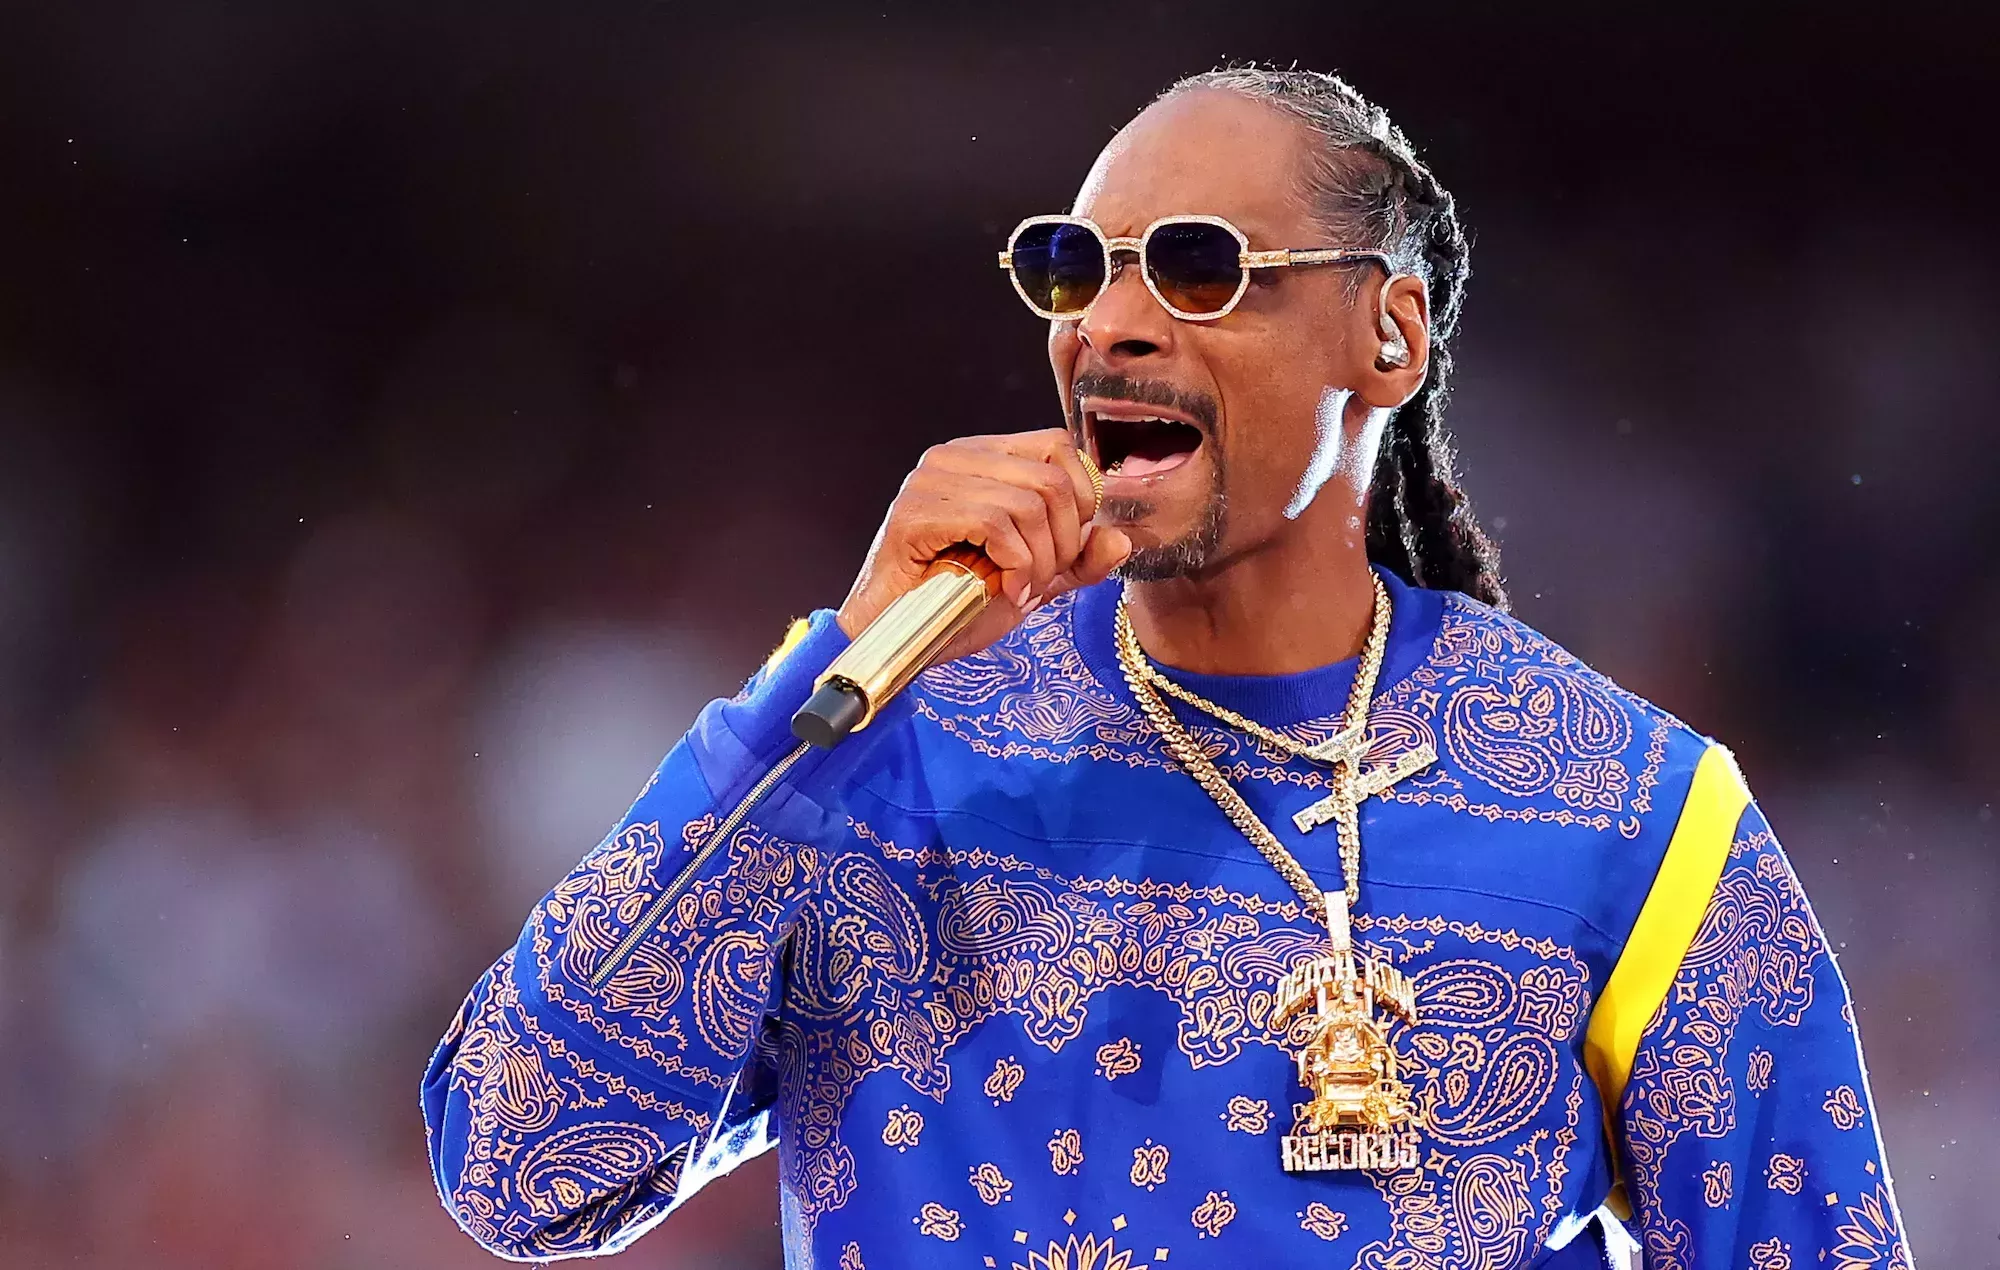 La demanda contra Snoop Dogg se reanuda en los tribunales tras ser desestimada anteriormente